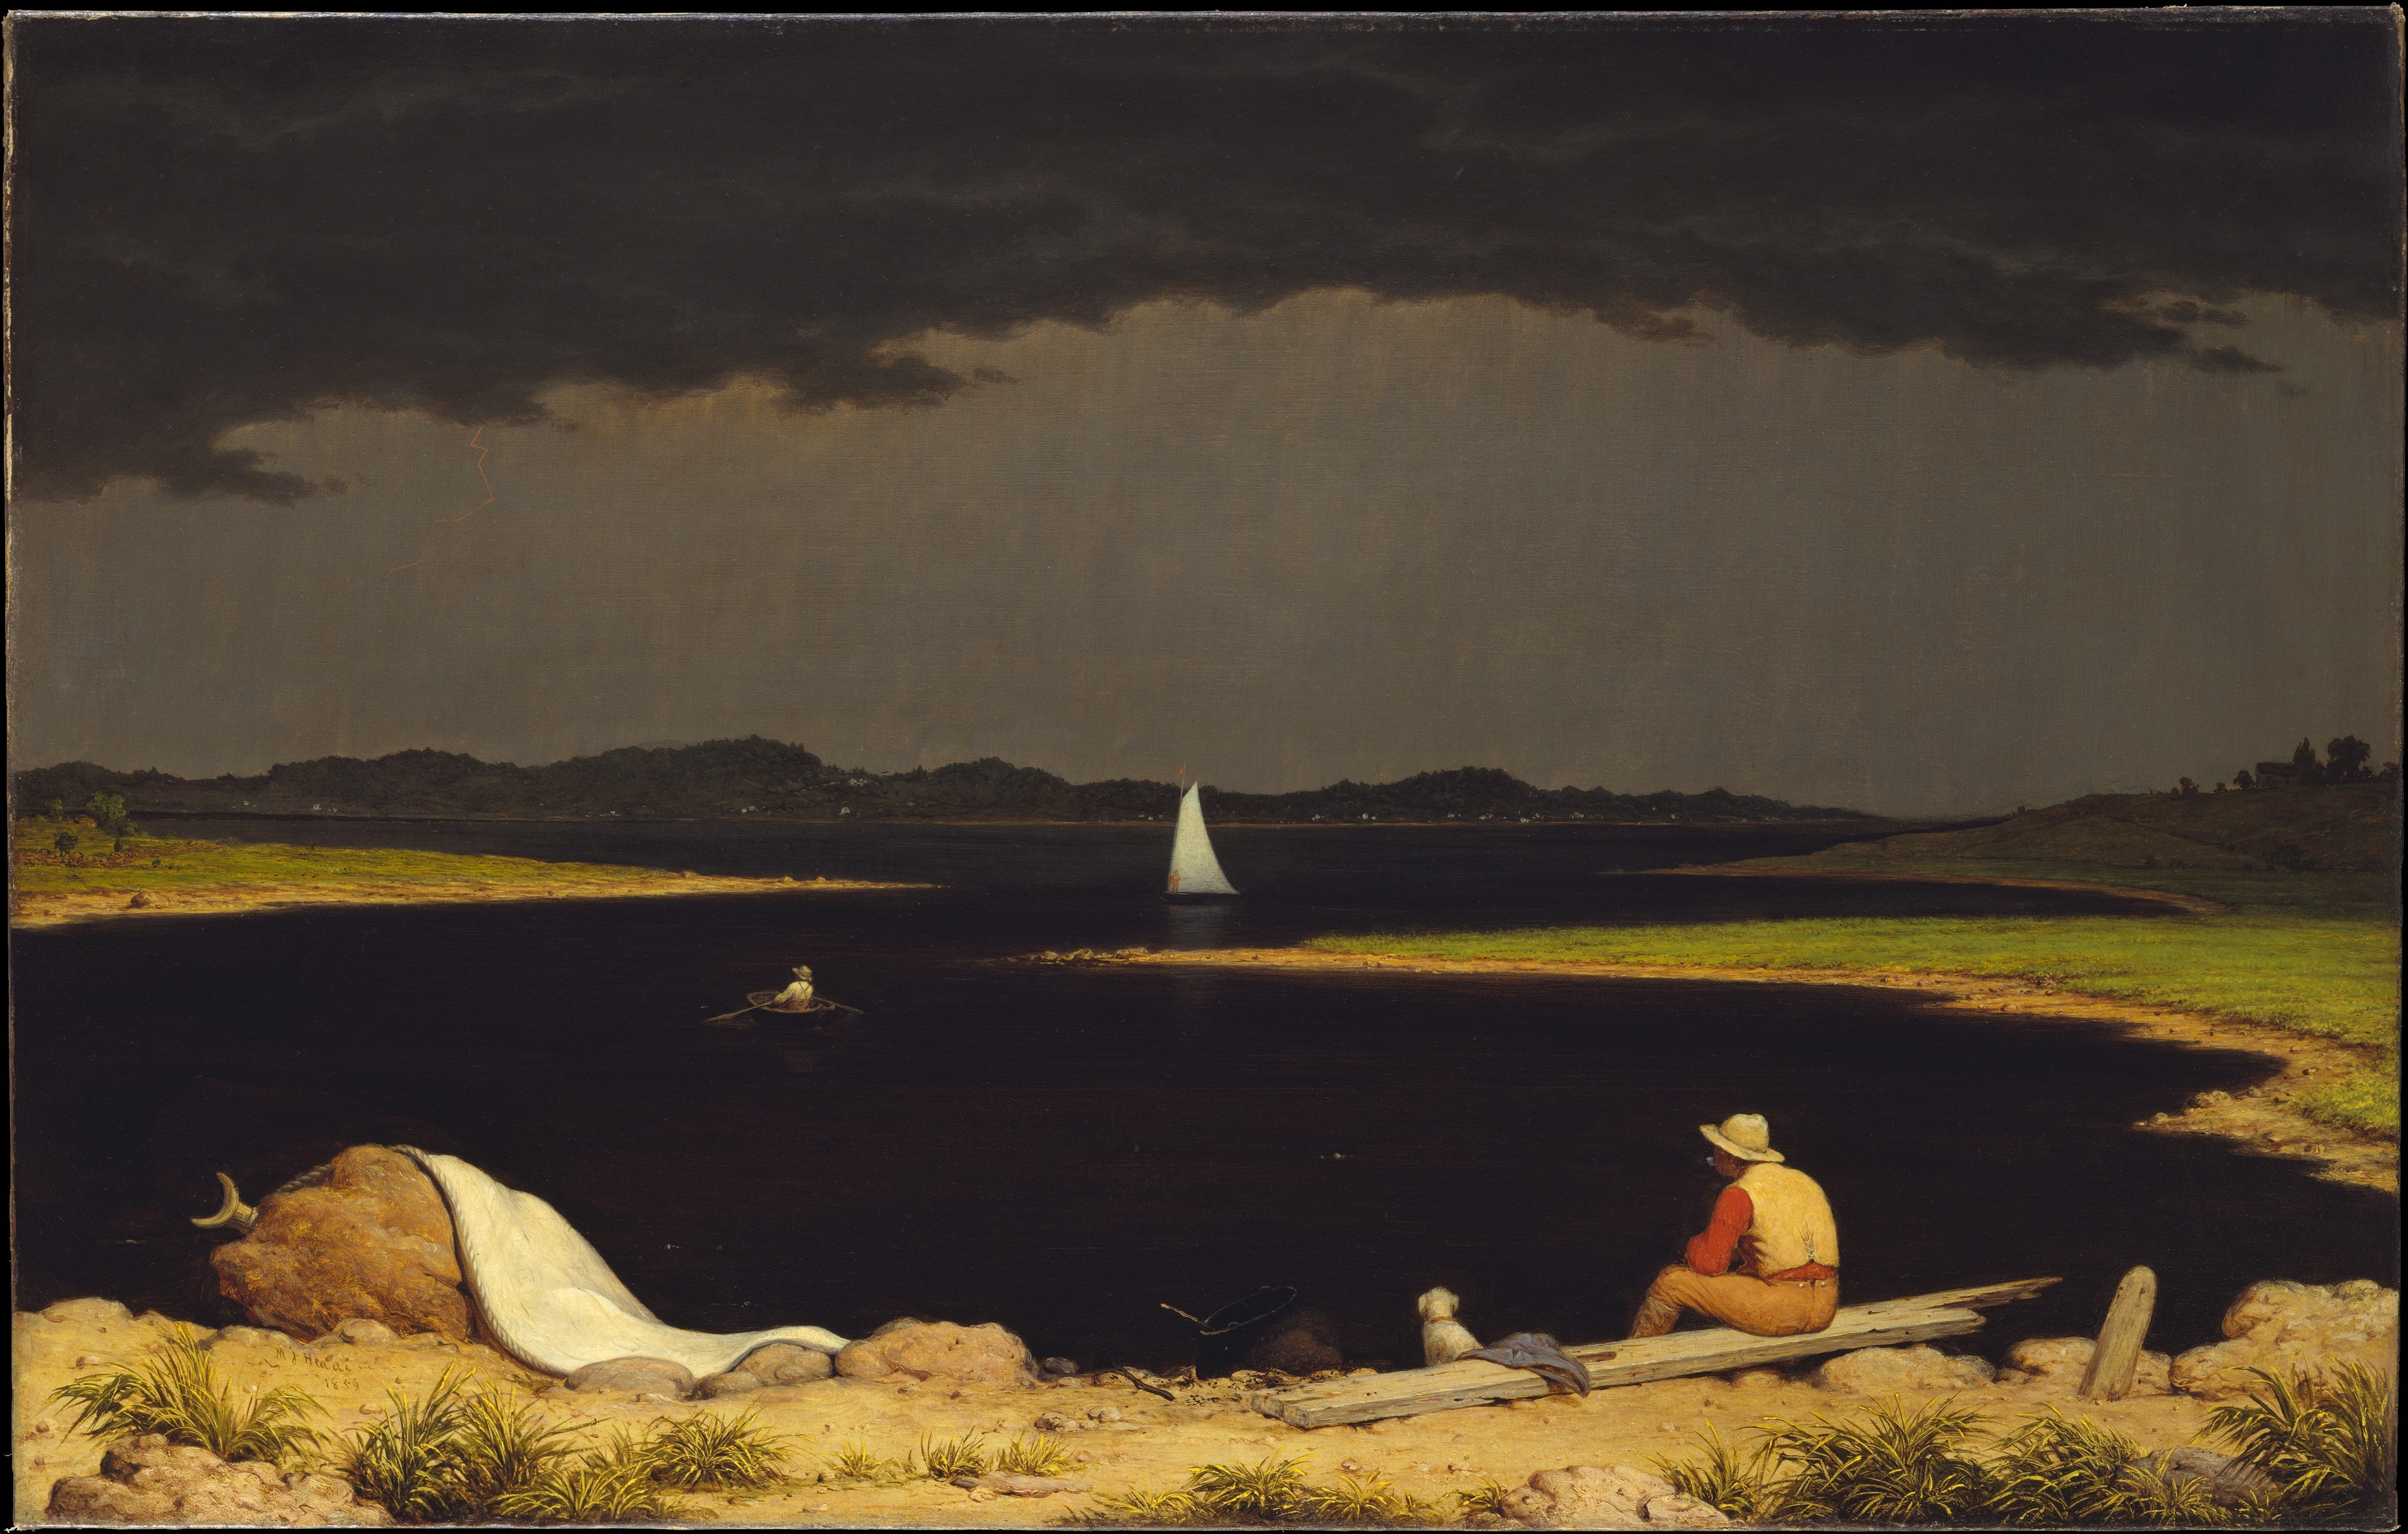 Blížící se bouřka by Martin Johnson Heade - 1859 - 71.1 x 111.8cm 